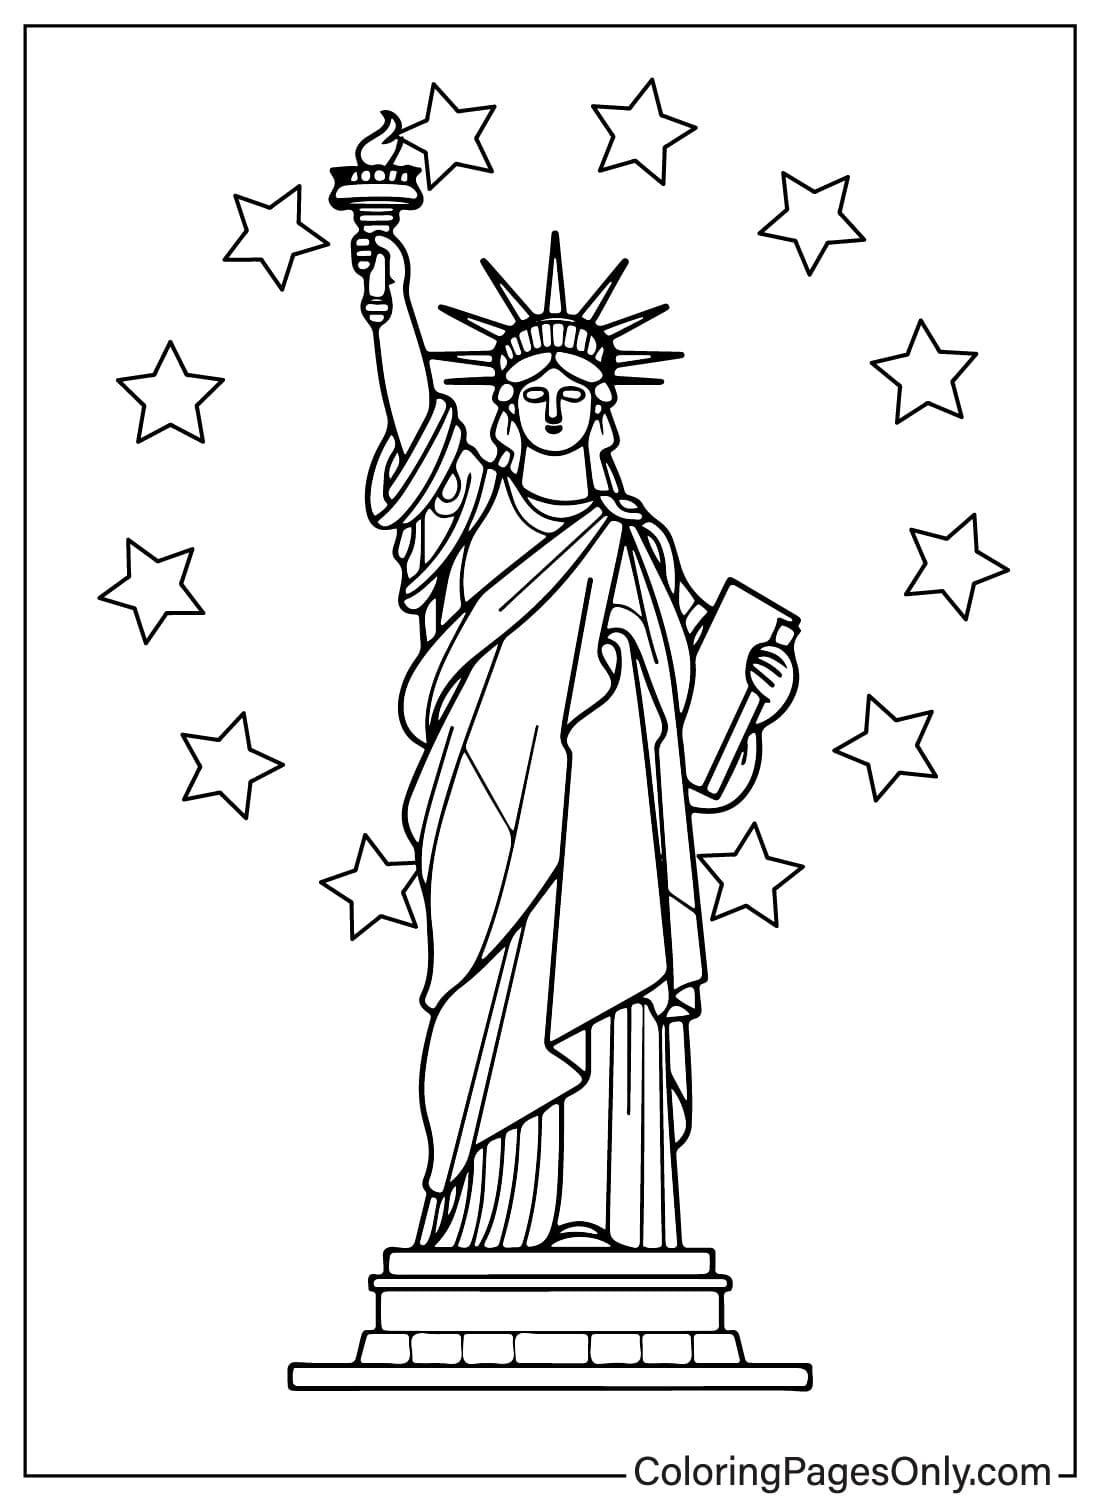 Immagine della Statua della Libertà da colorare dalla Statua della Libertà